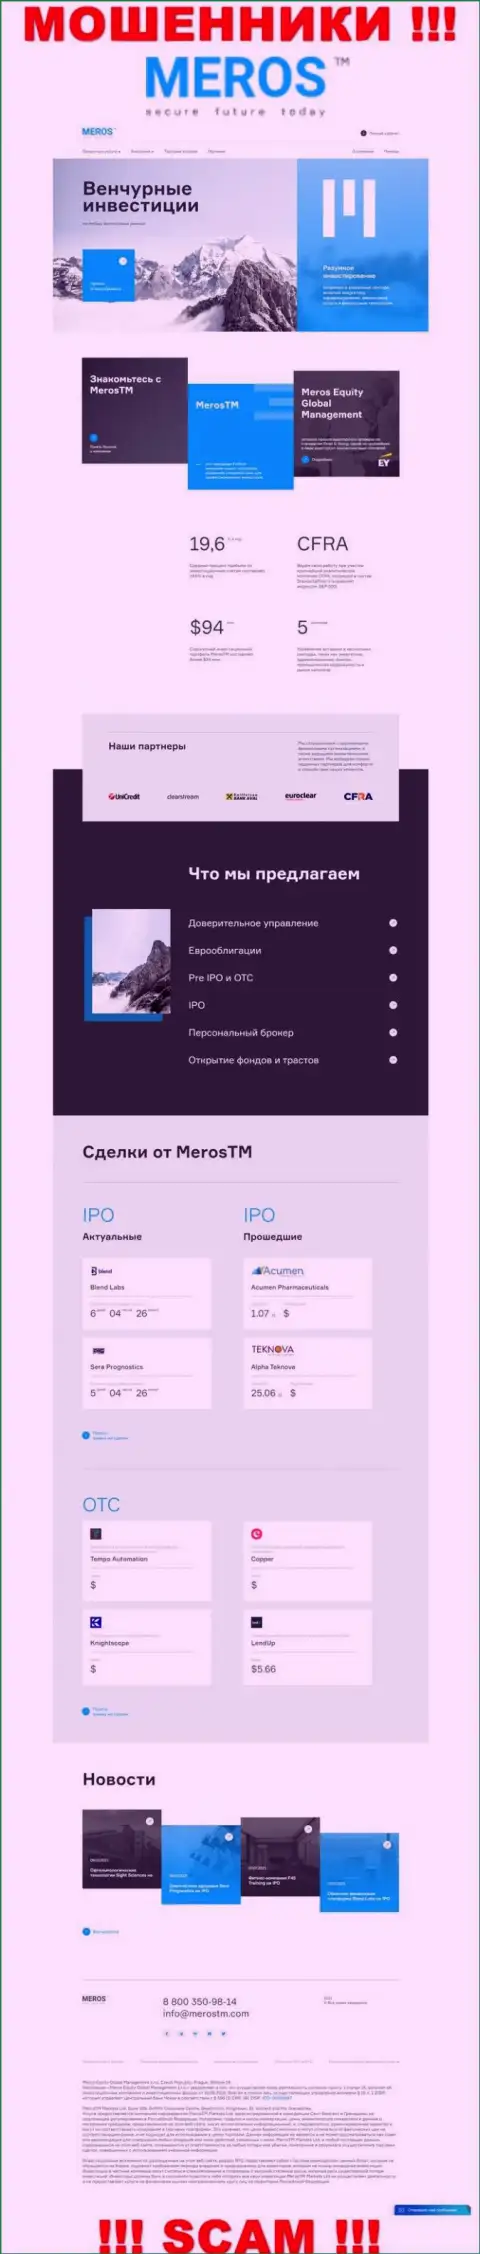 Обзор официального сайта ворюг MerosMT Markets LLC